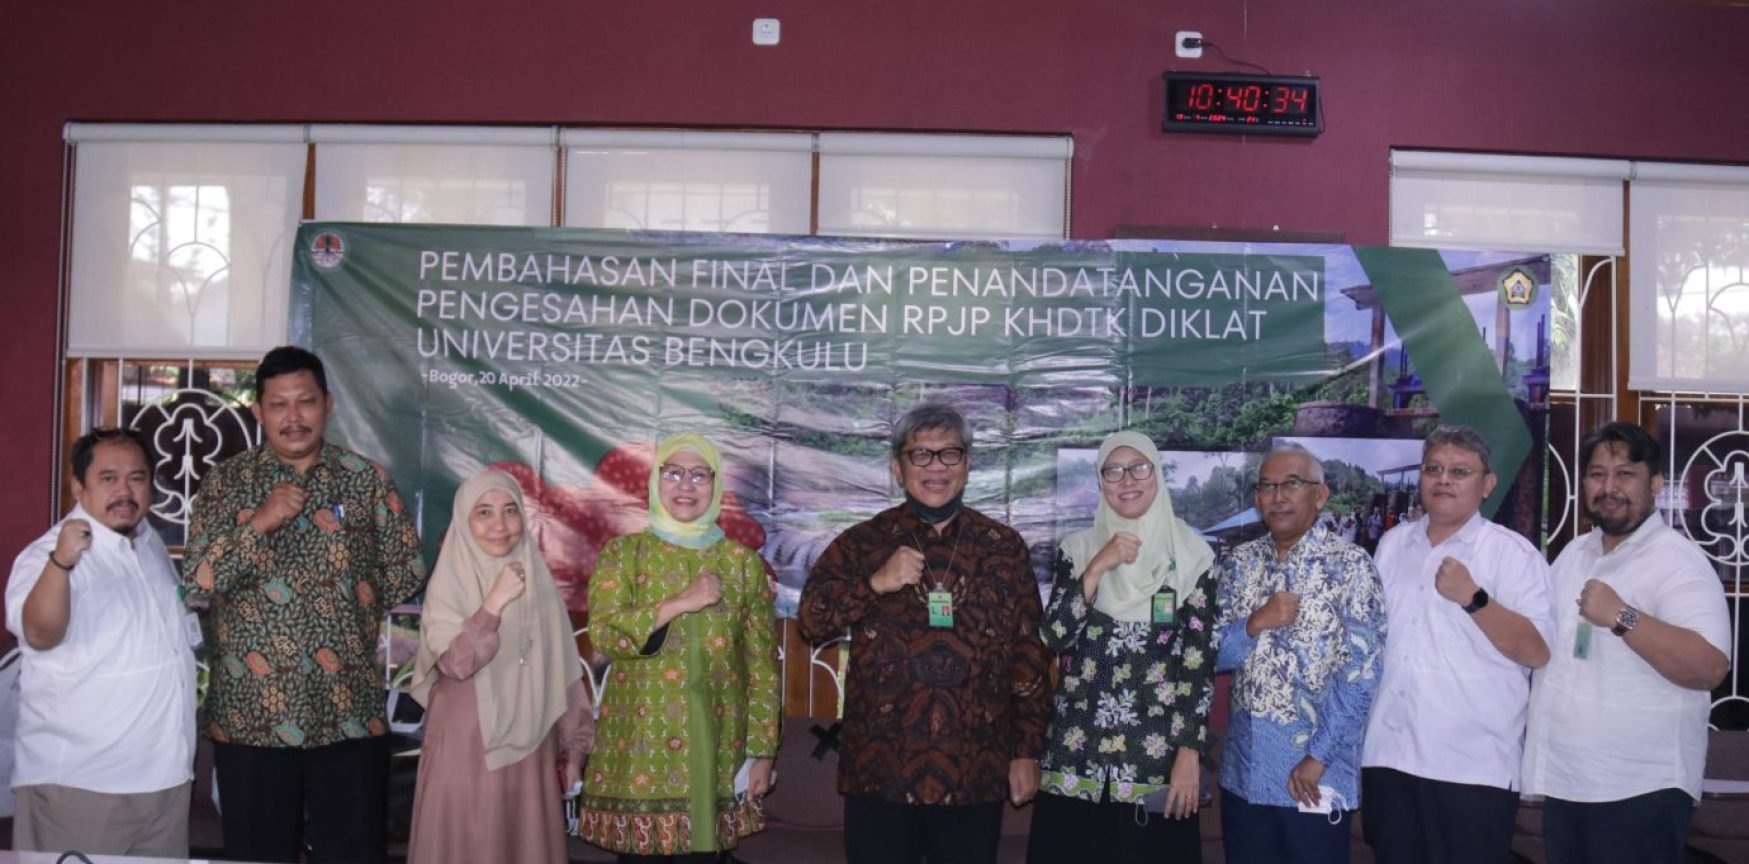 Pembahasan Final Pengesahan Dokumen RPJP KHDTK Diklat Universitas Bengkulu